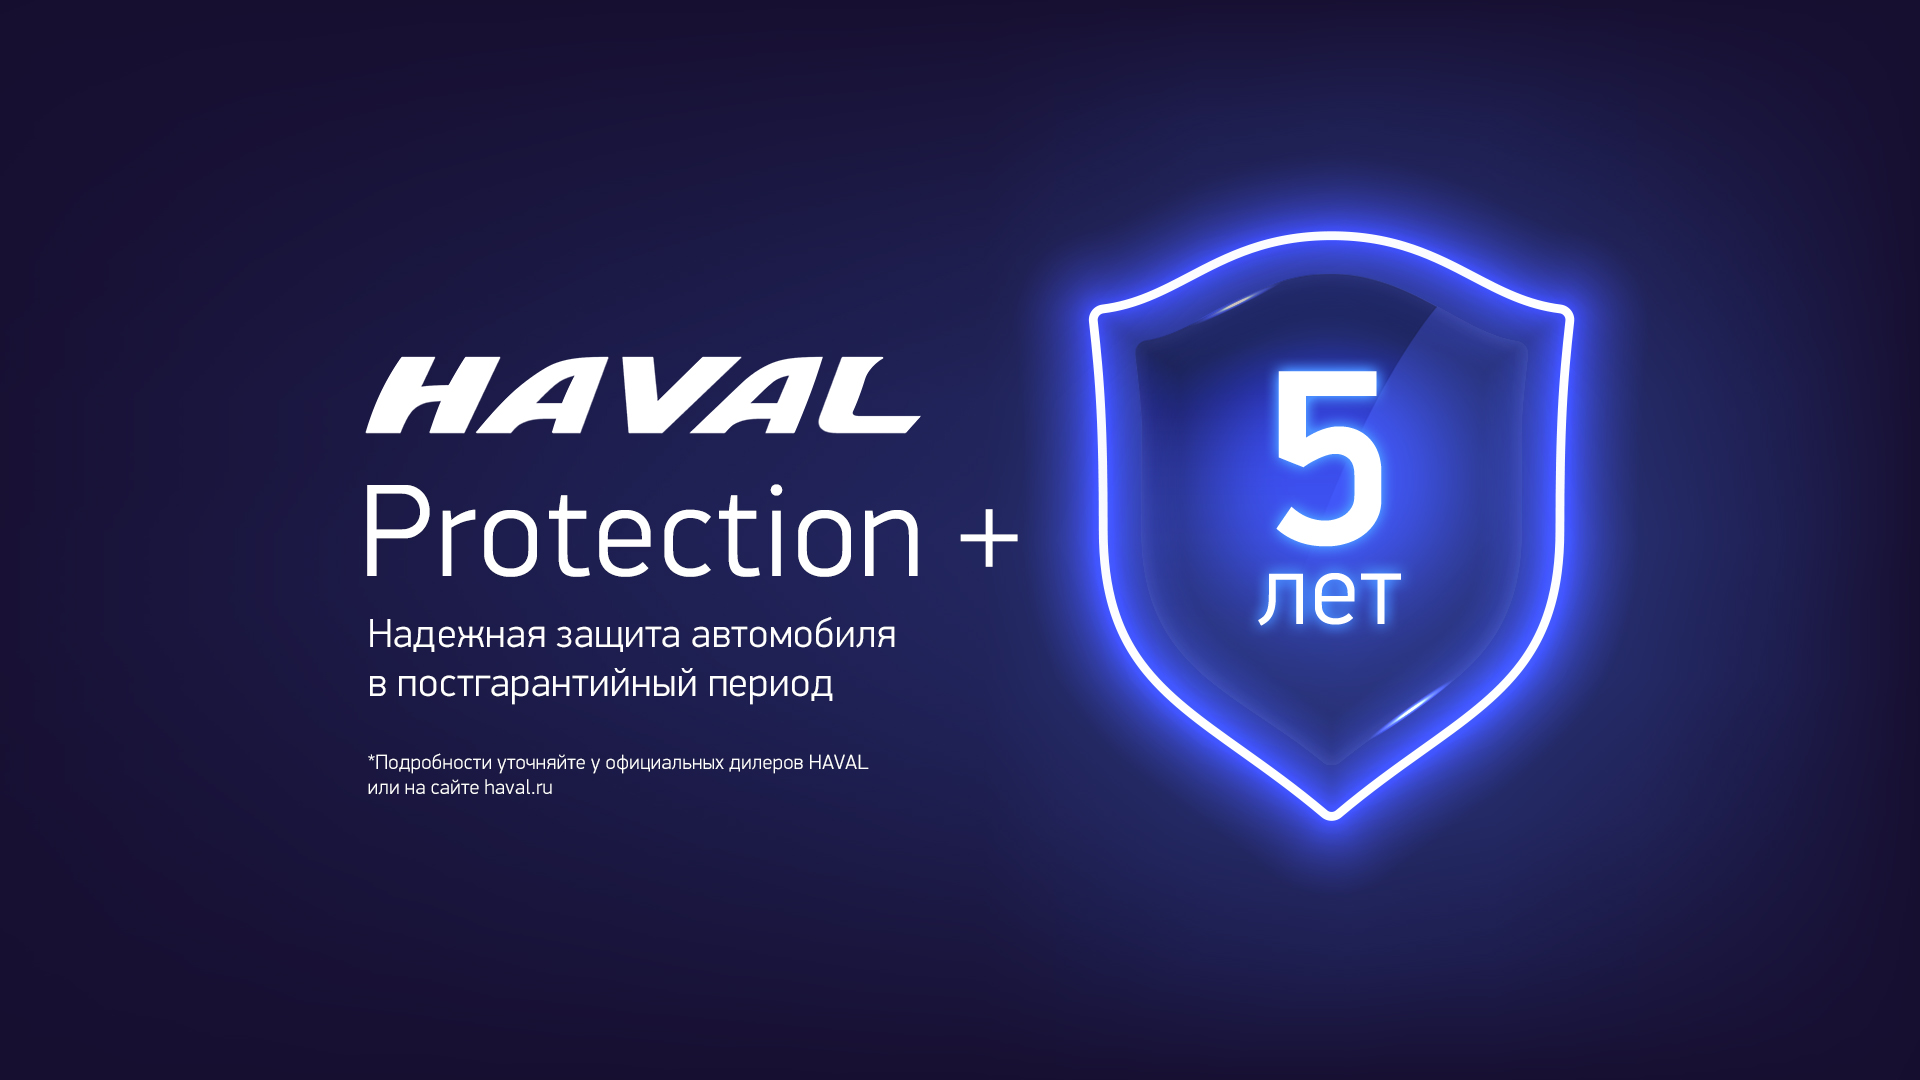 Haval предлагает клиентам программу Haval Protection+